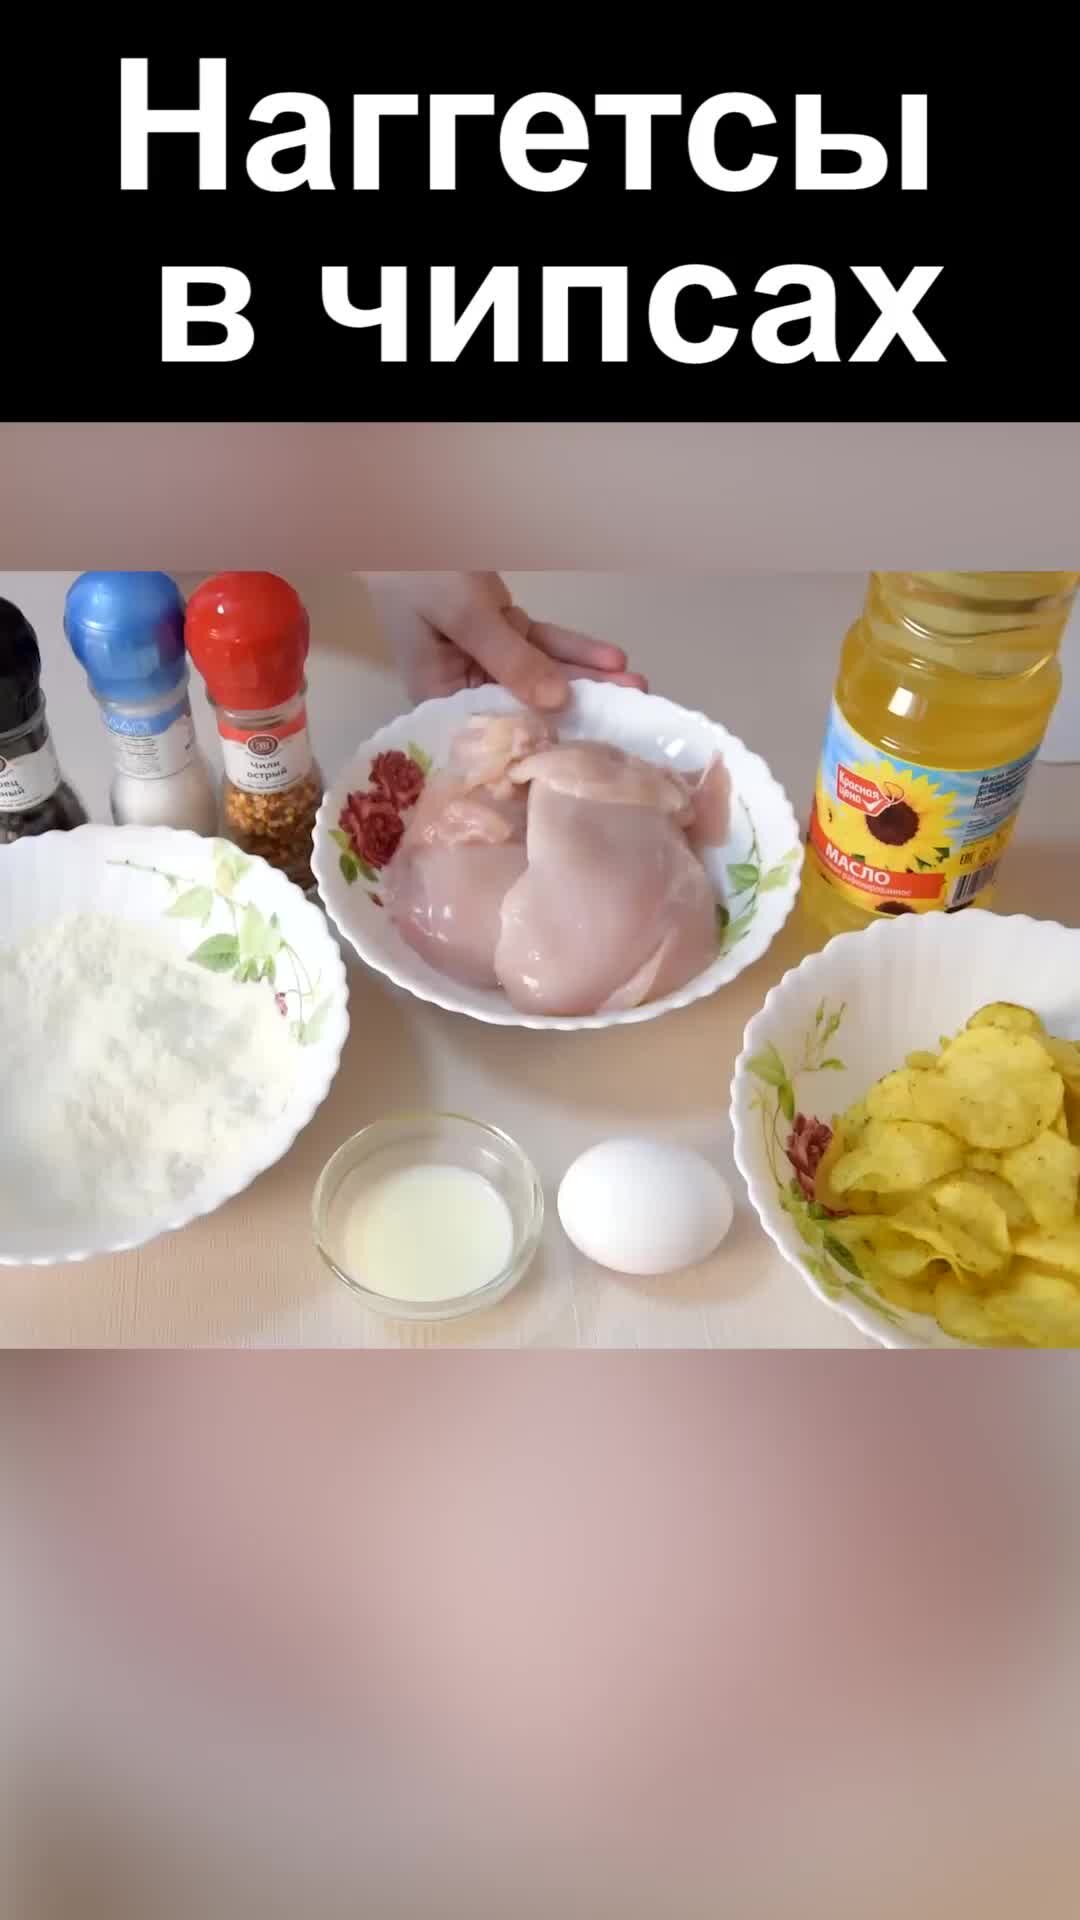 Готовим куриные наггетсы дома: 5 лучших рецептов. Кулинарные статьи и лайфхаки